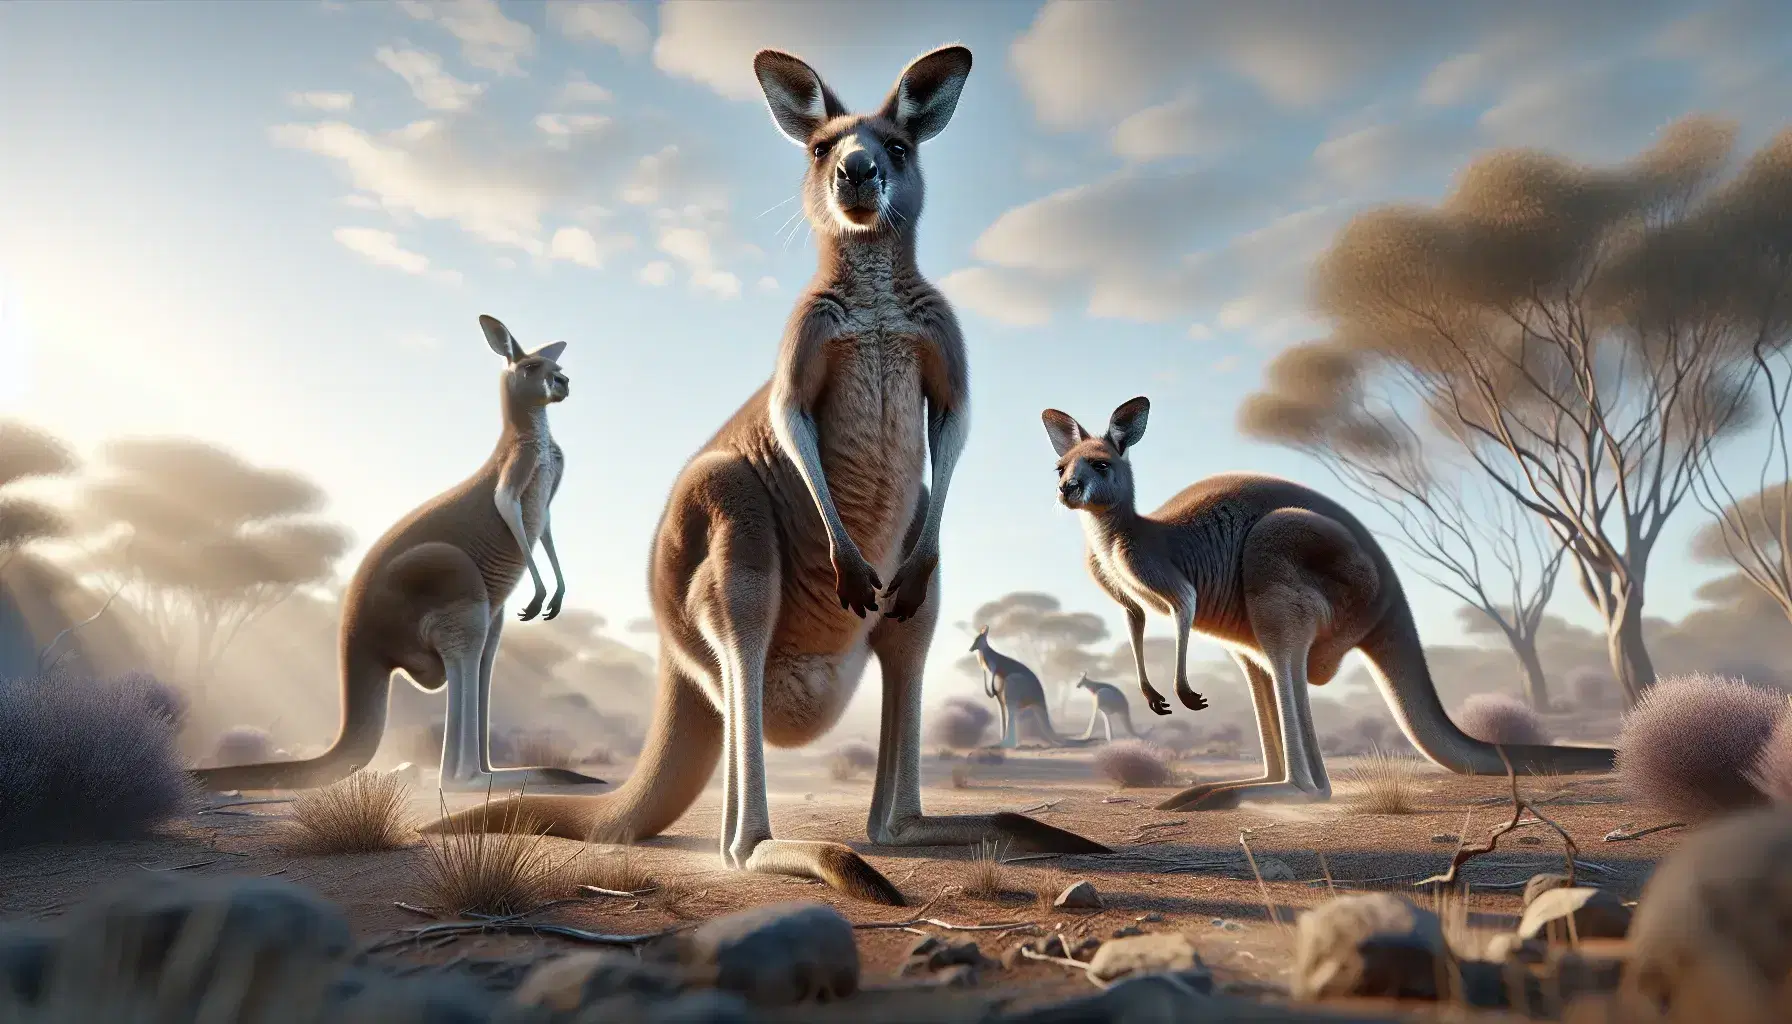 Grupo de tres canguros en hábitat natural, con uno adulto en primer plano y otro joven a su lado, y un tercero en movimiento al fondo, bajo un cielo azul.